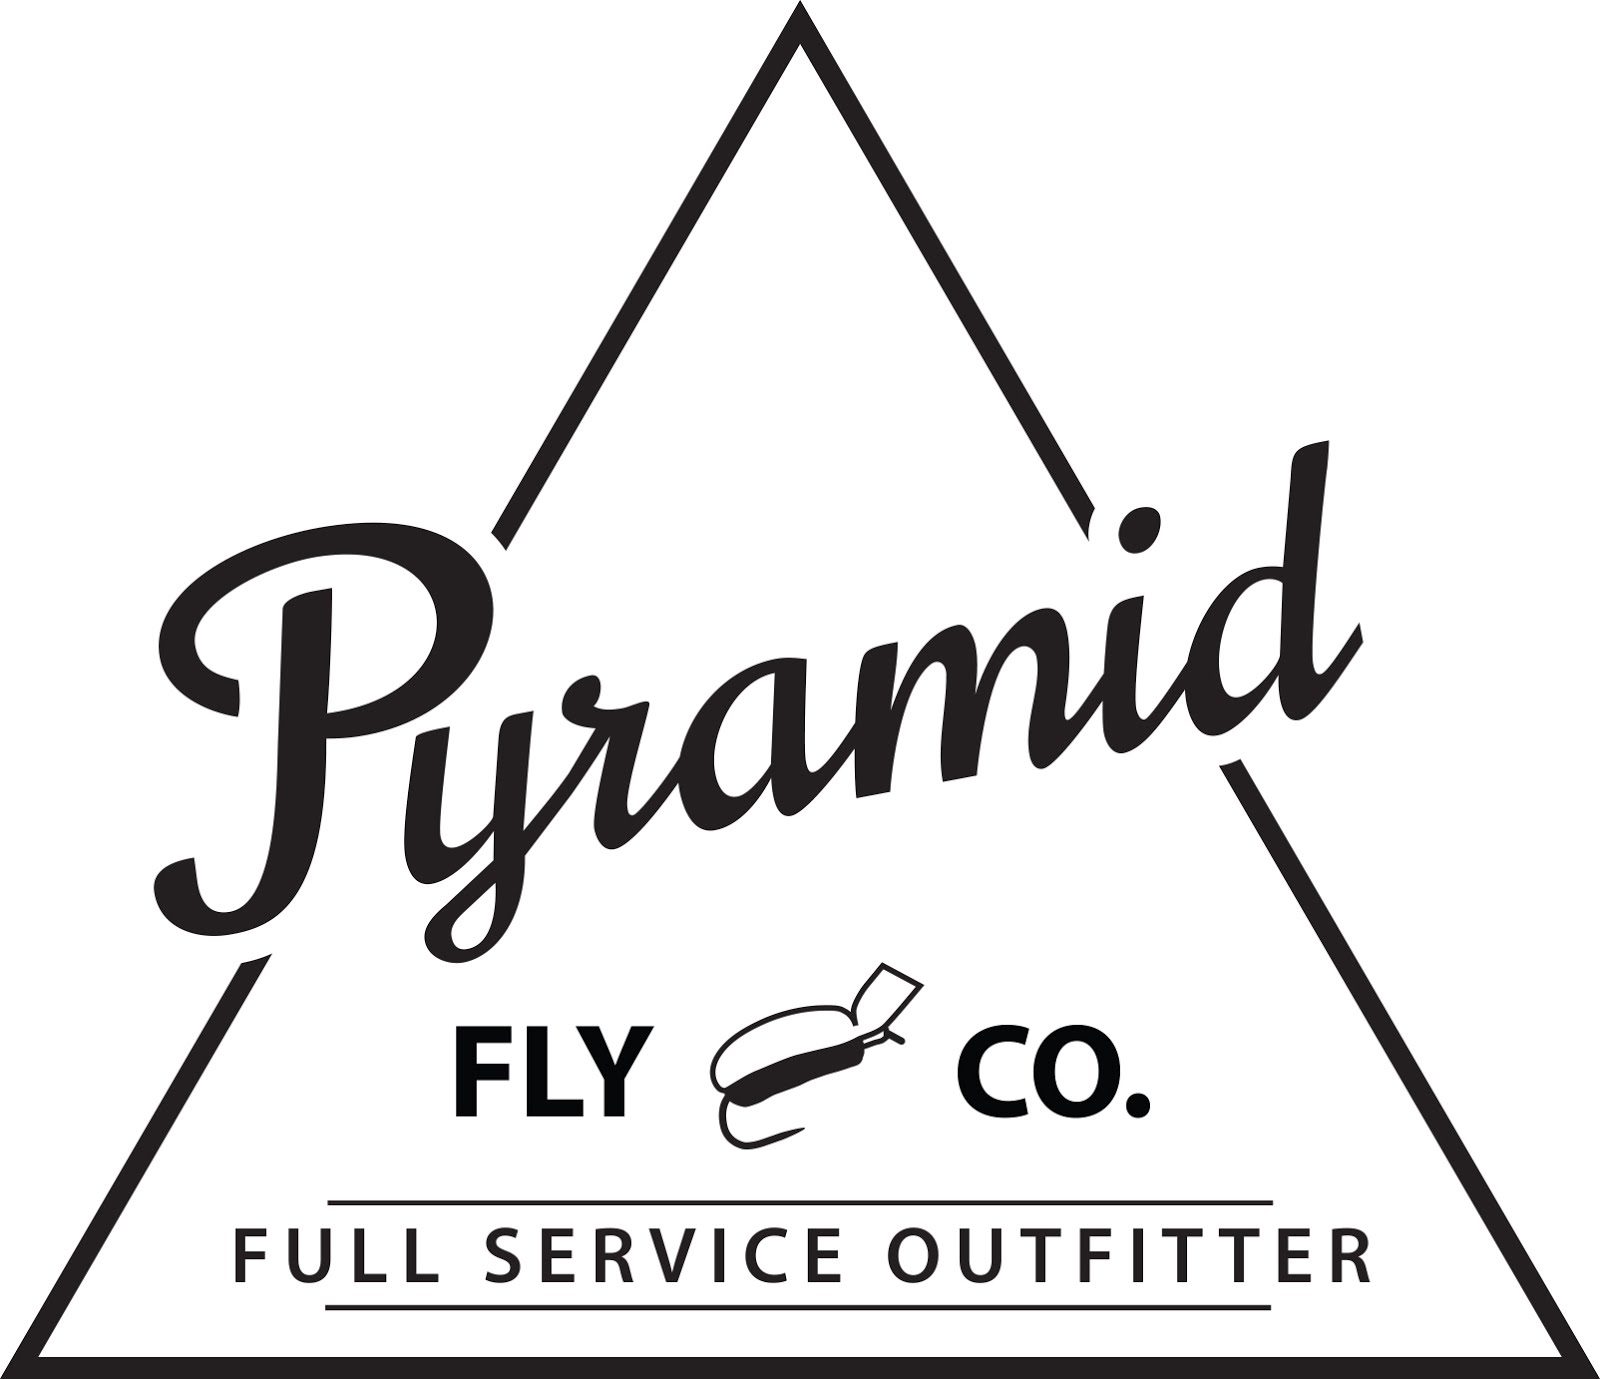 PYRAMID FLY CO